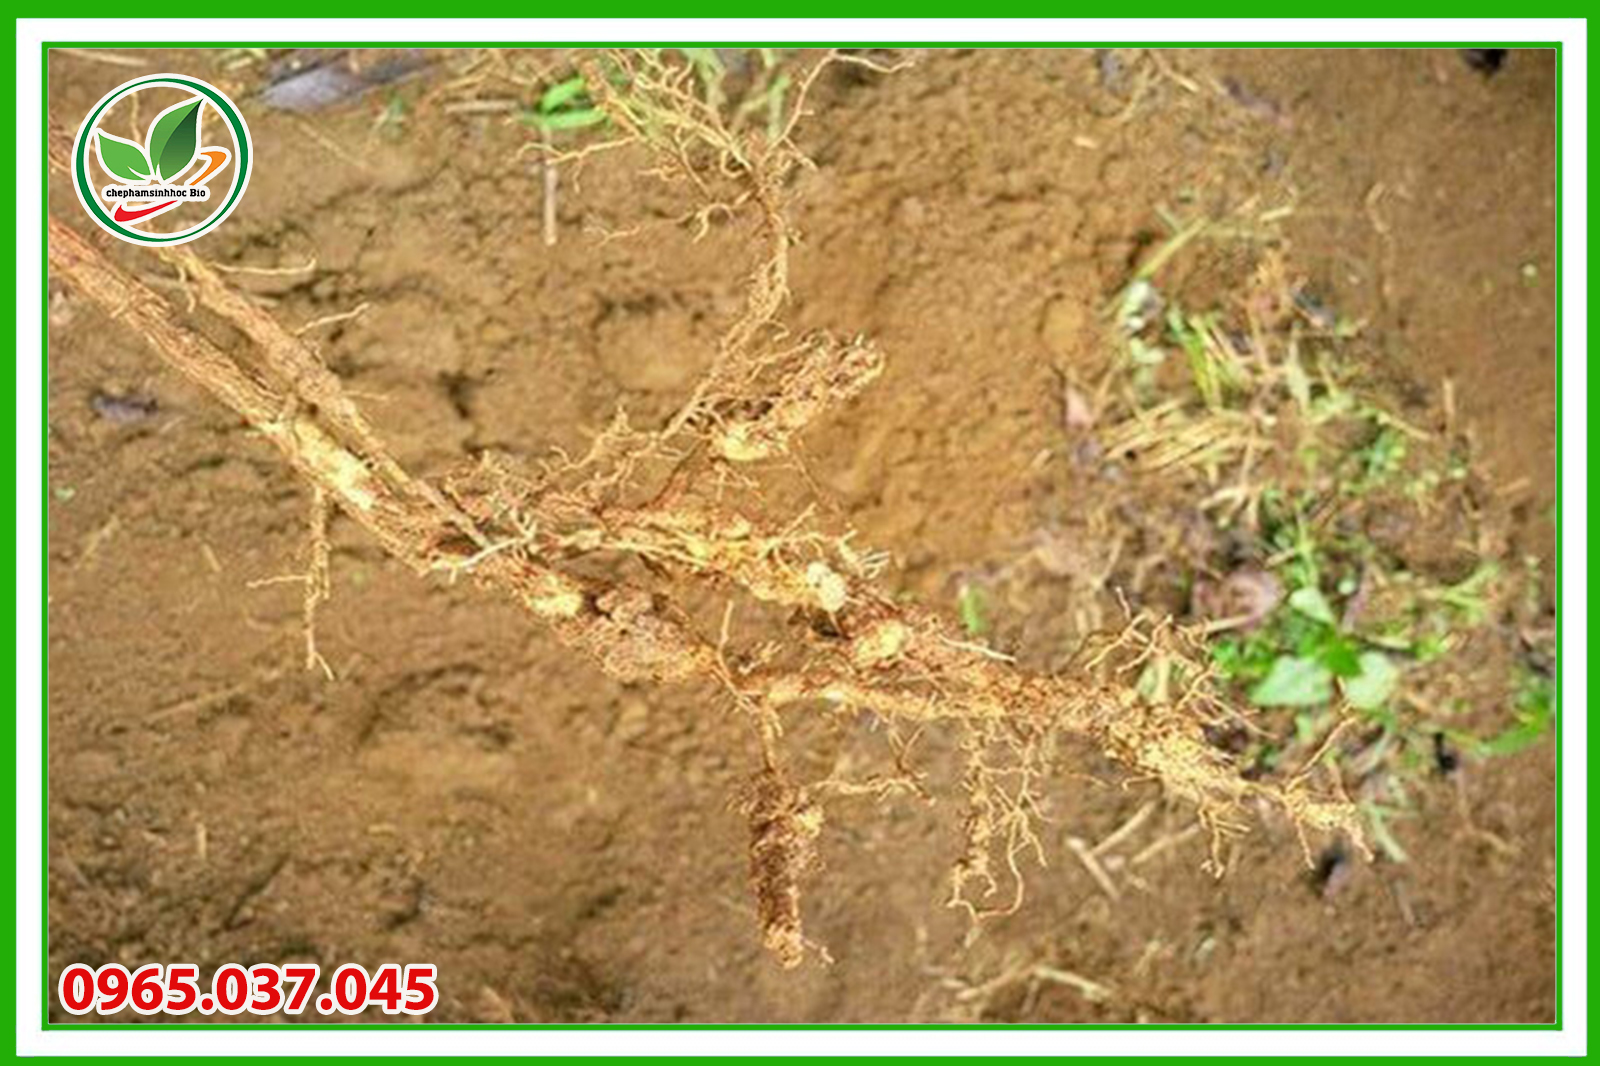 Trồng luân canh các loại cây khác nhau để ngăn ngừa sự phát triển và lây lan của tuyến trùng rễ